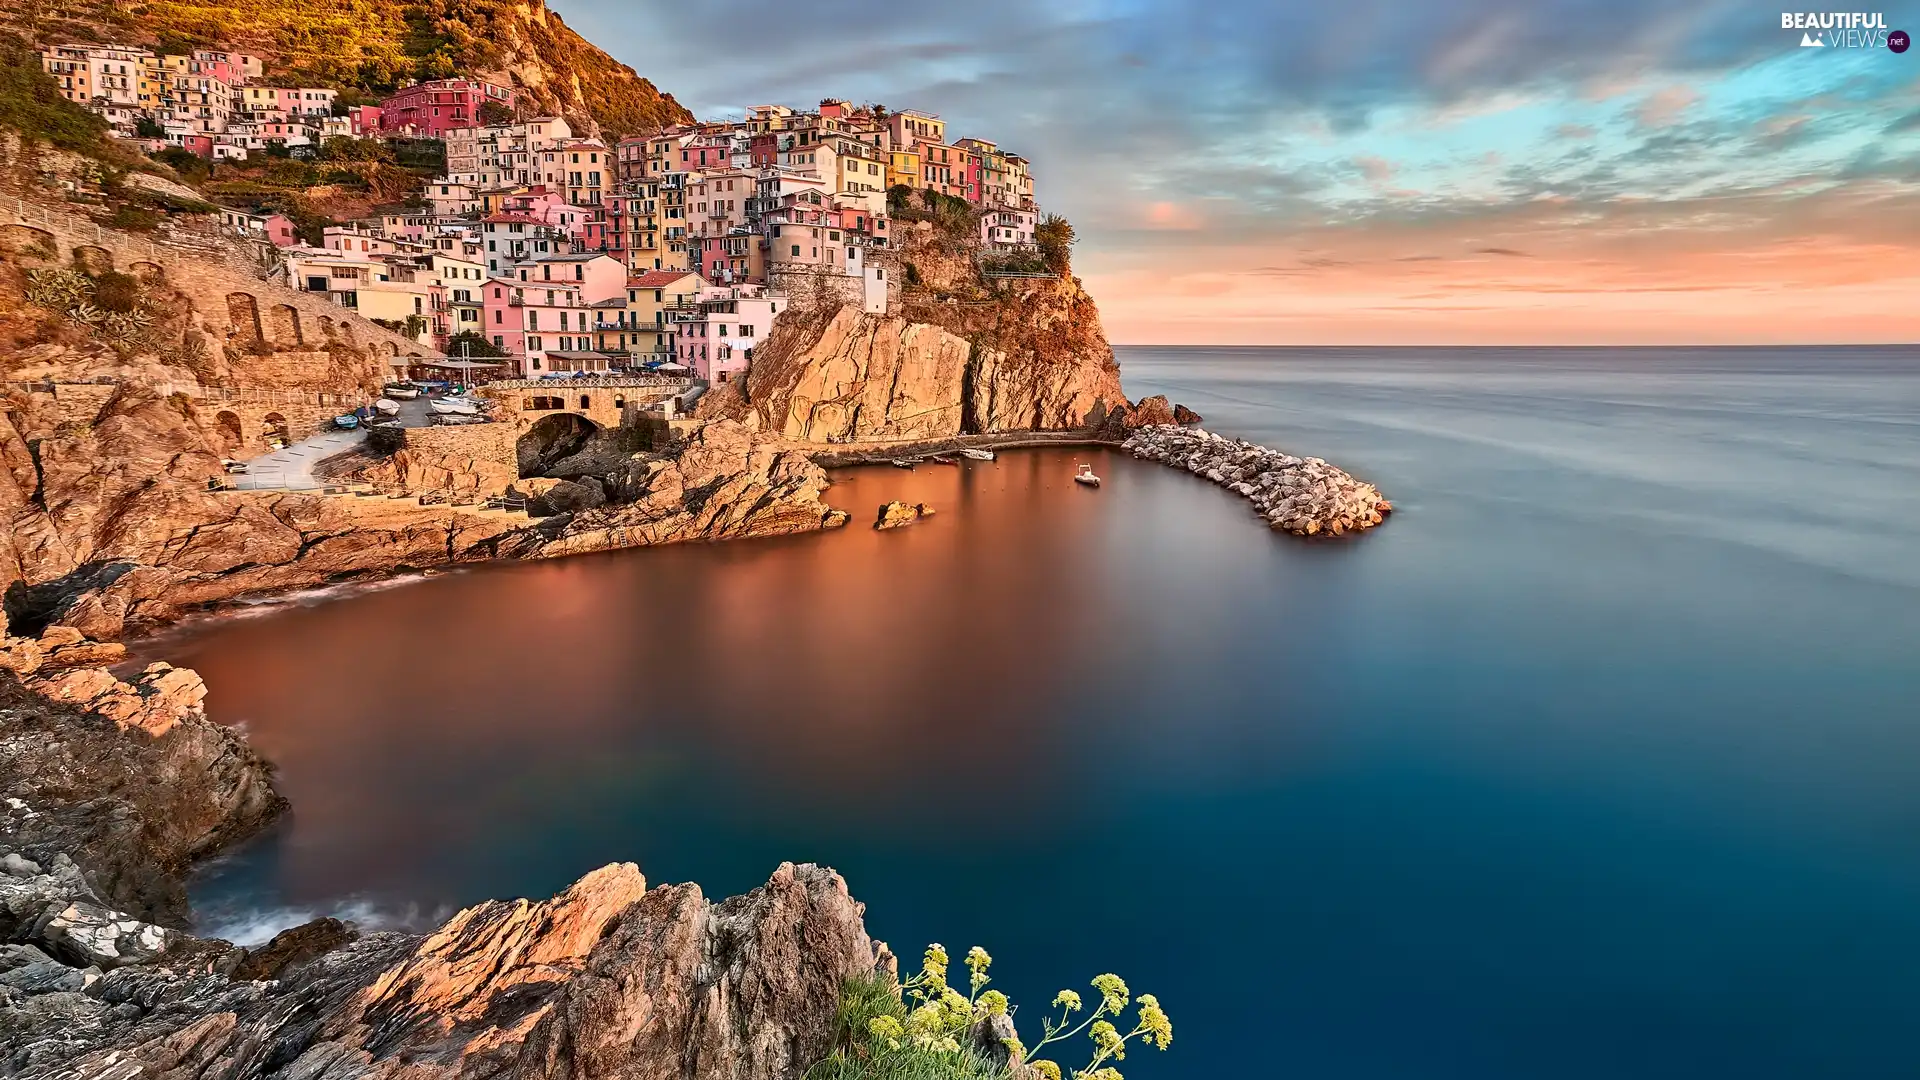 Riomaggiore Municipality, Italy, City of Manarola, Ligurian Sea, Gulf, clouds, color, Houses, Cinque Terre